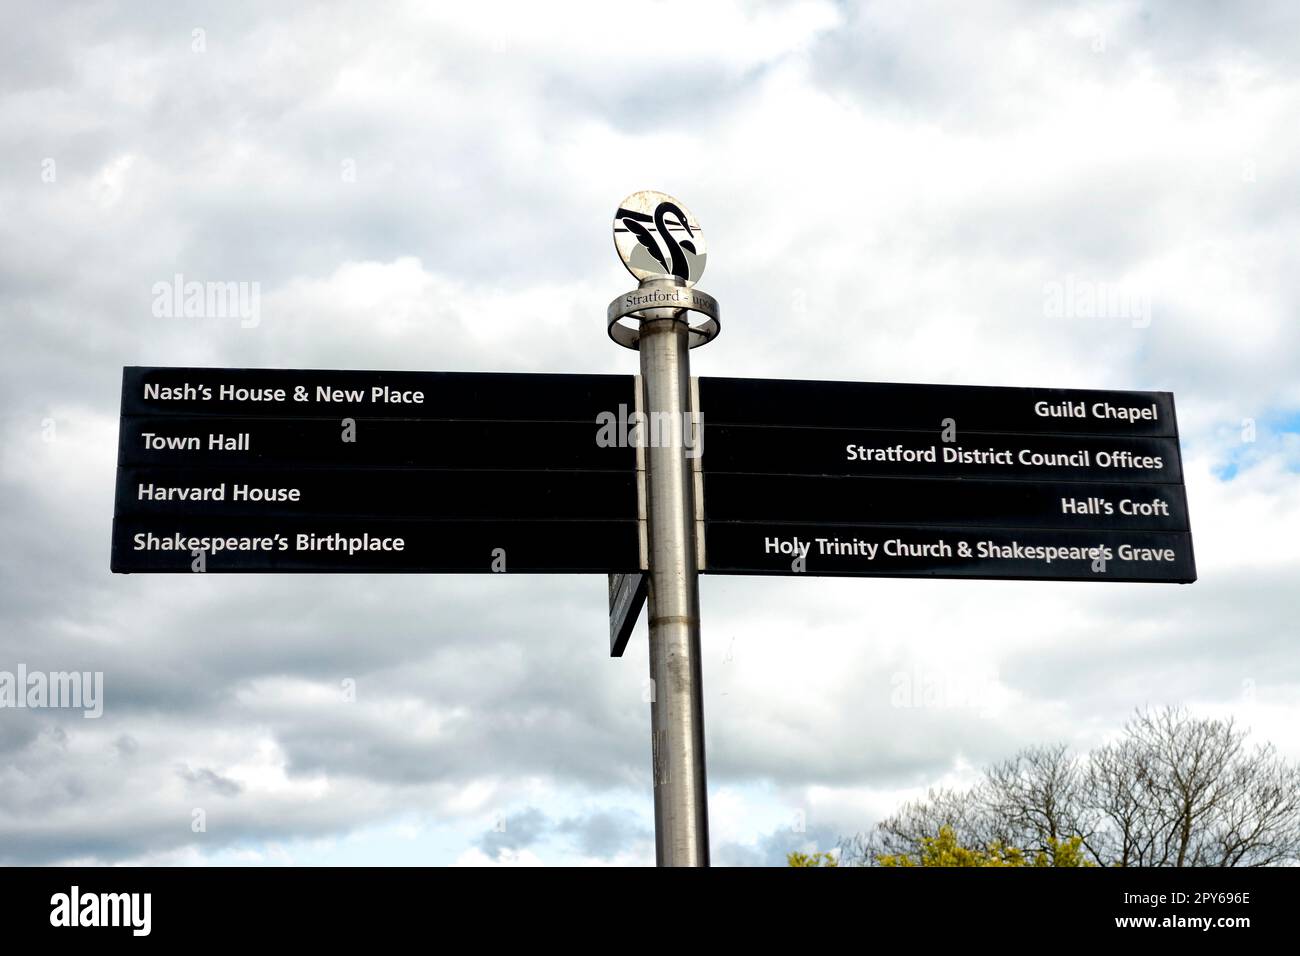 Indicazioni stradali per il Regno Unito a Stratford Upon Avon, con dettagli su luoghi storici e importanti. Inghilterra Foto Stock